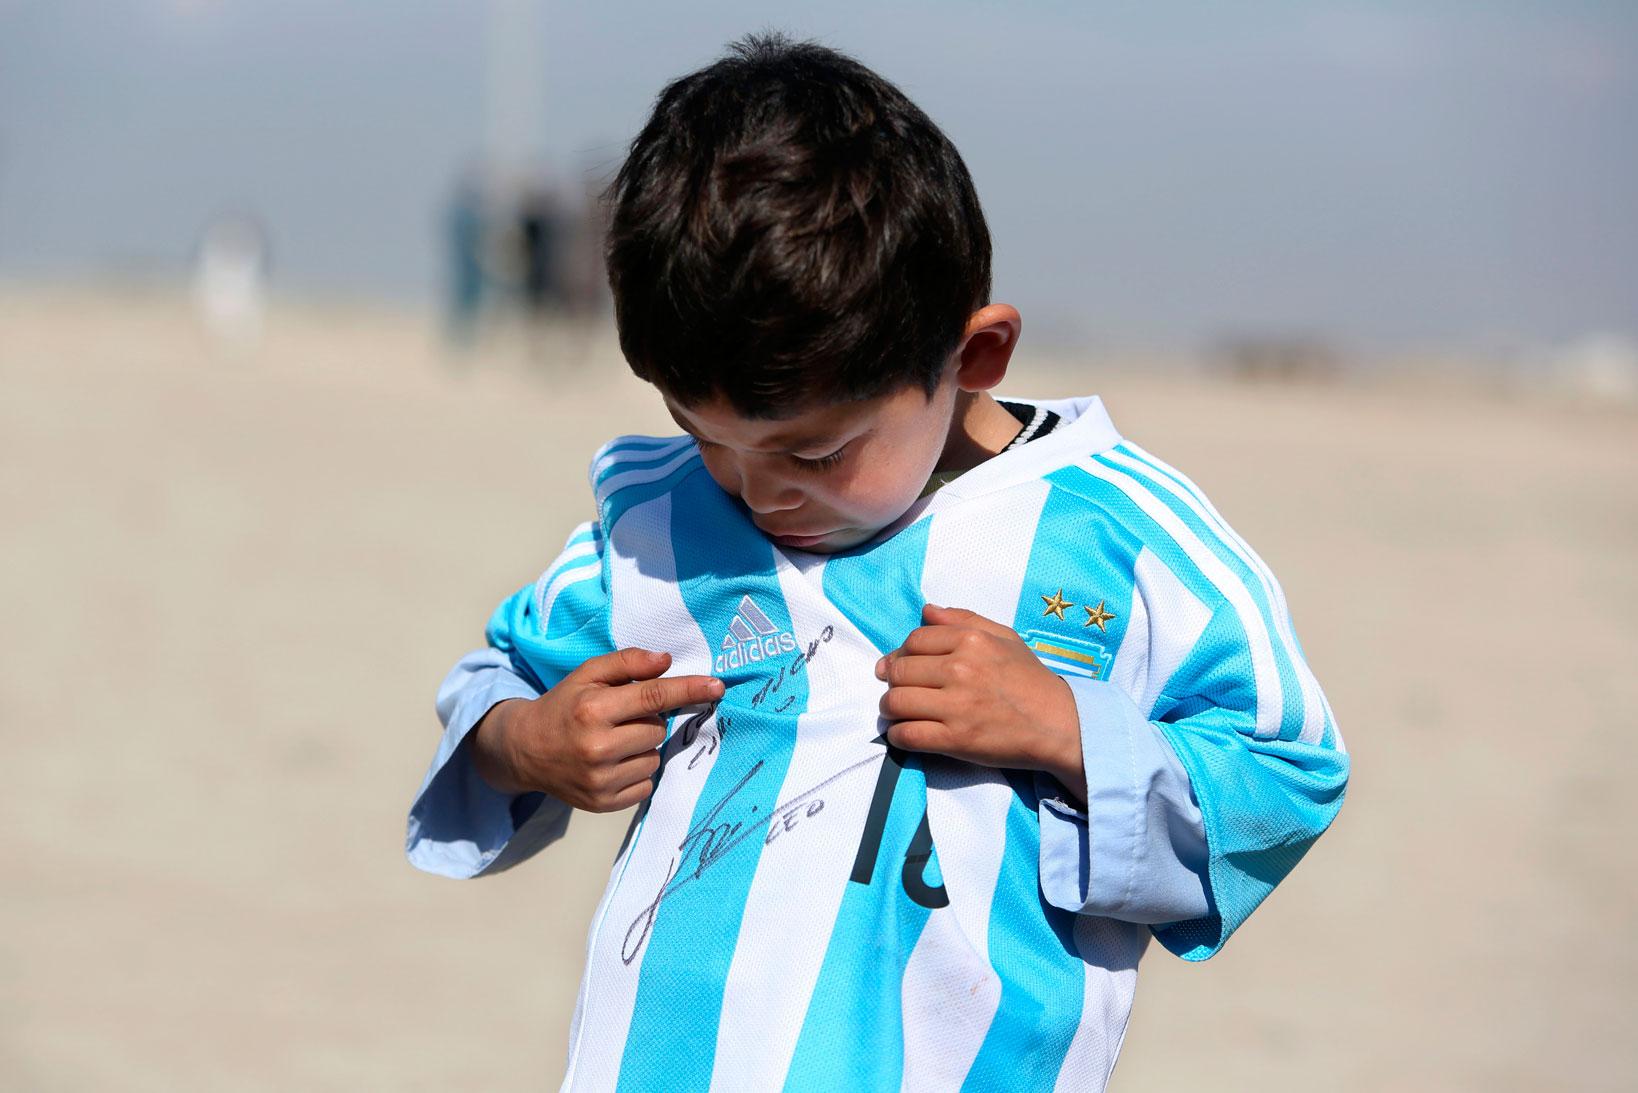 Murtaza Ahmadi, 5, fick en signerad tröja av Lionel Messi.